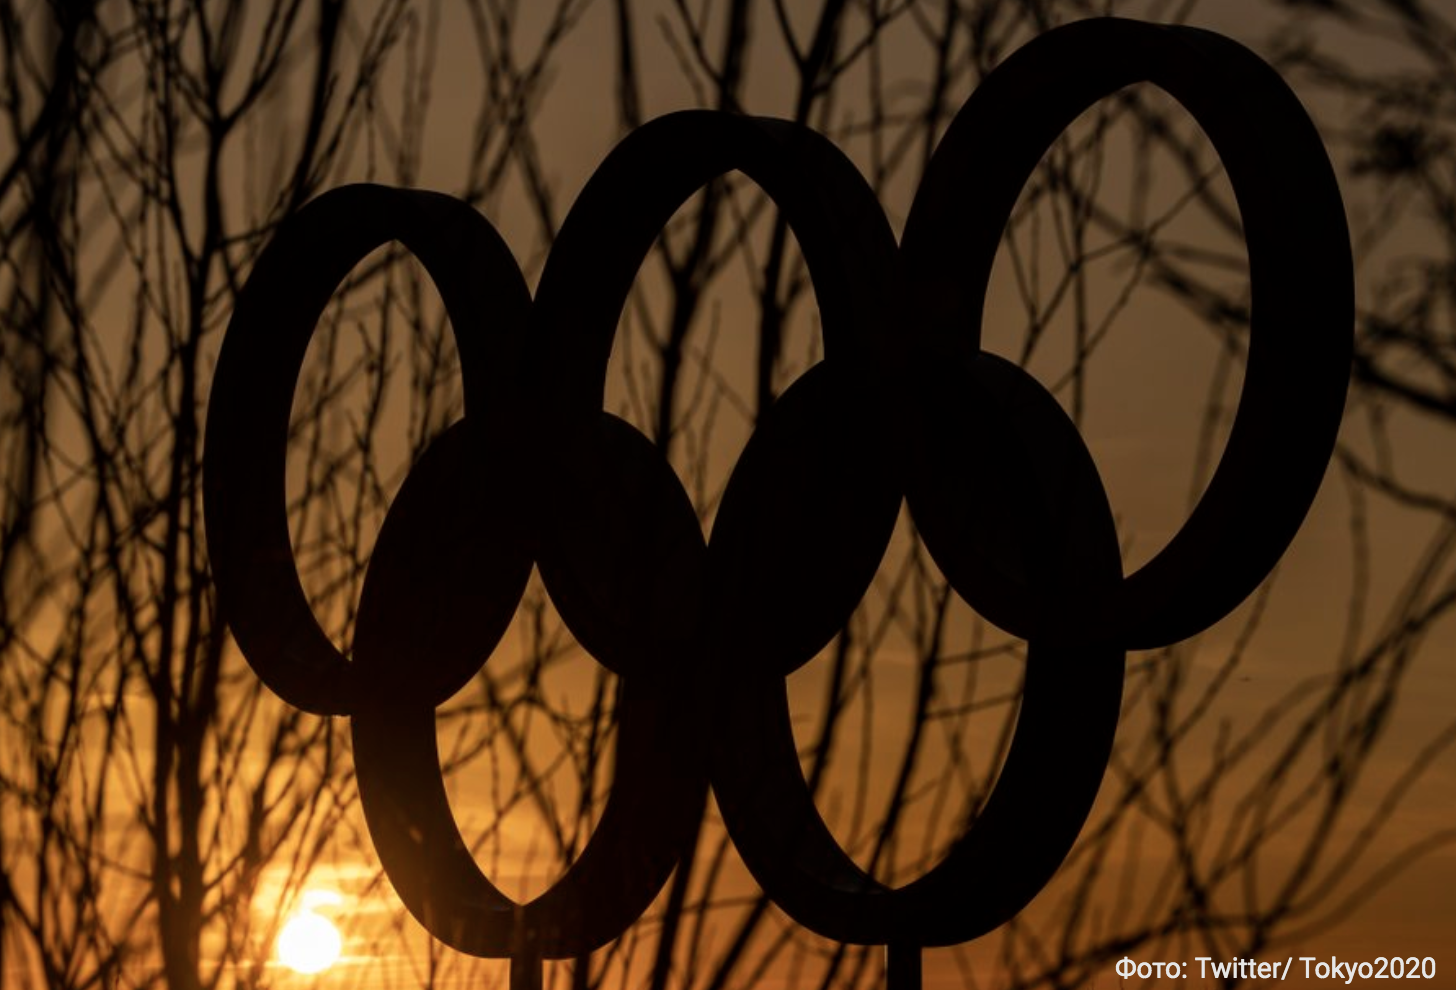 На Олимпийских играх немецкие гимнастки выступили в комбинезонах вместо трико (фото)